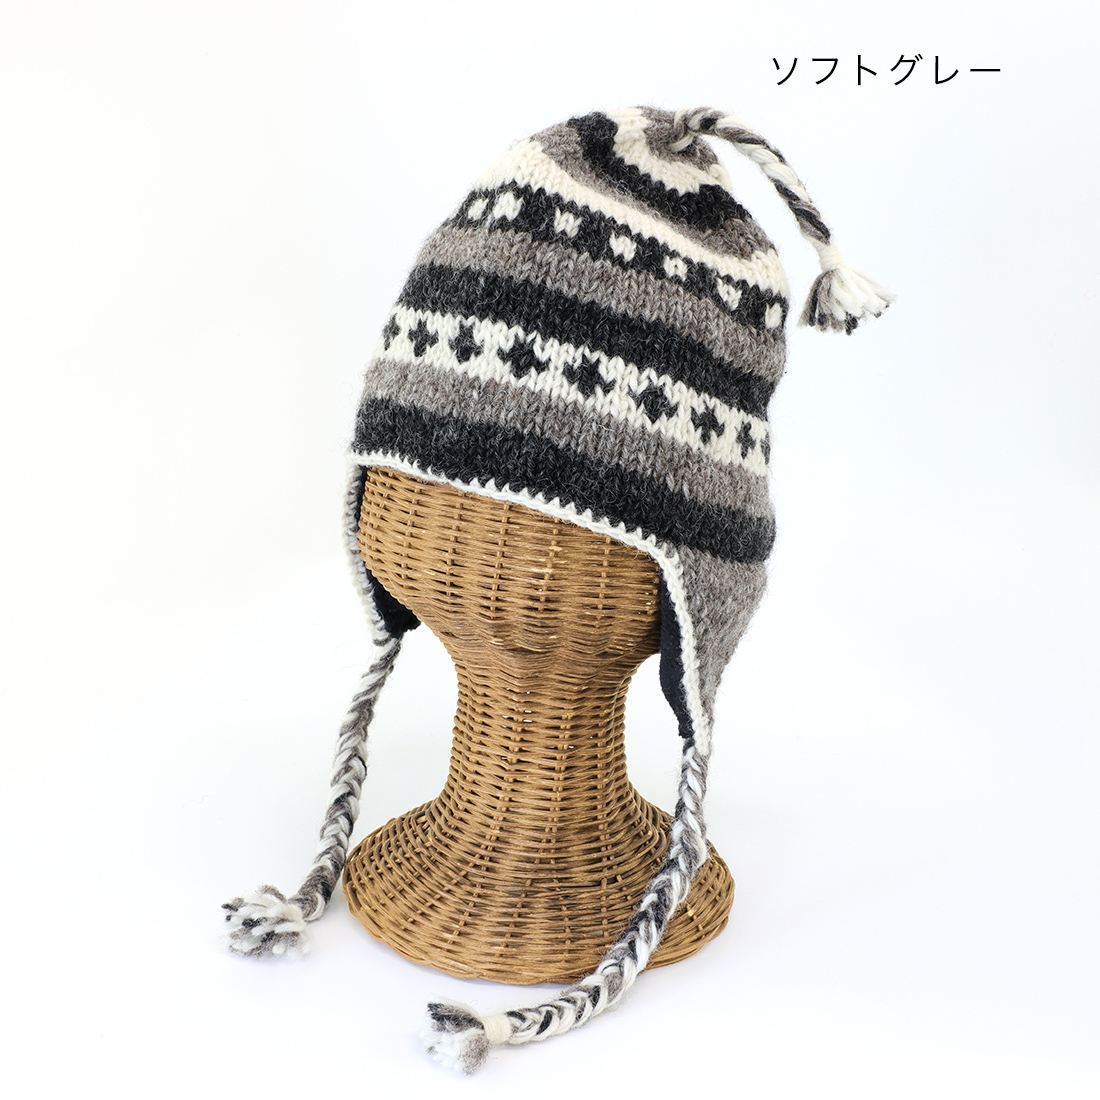 人気ブランド ハンドメイド手編みニット帽子薄いグレー系1228 ryokan